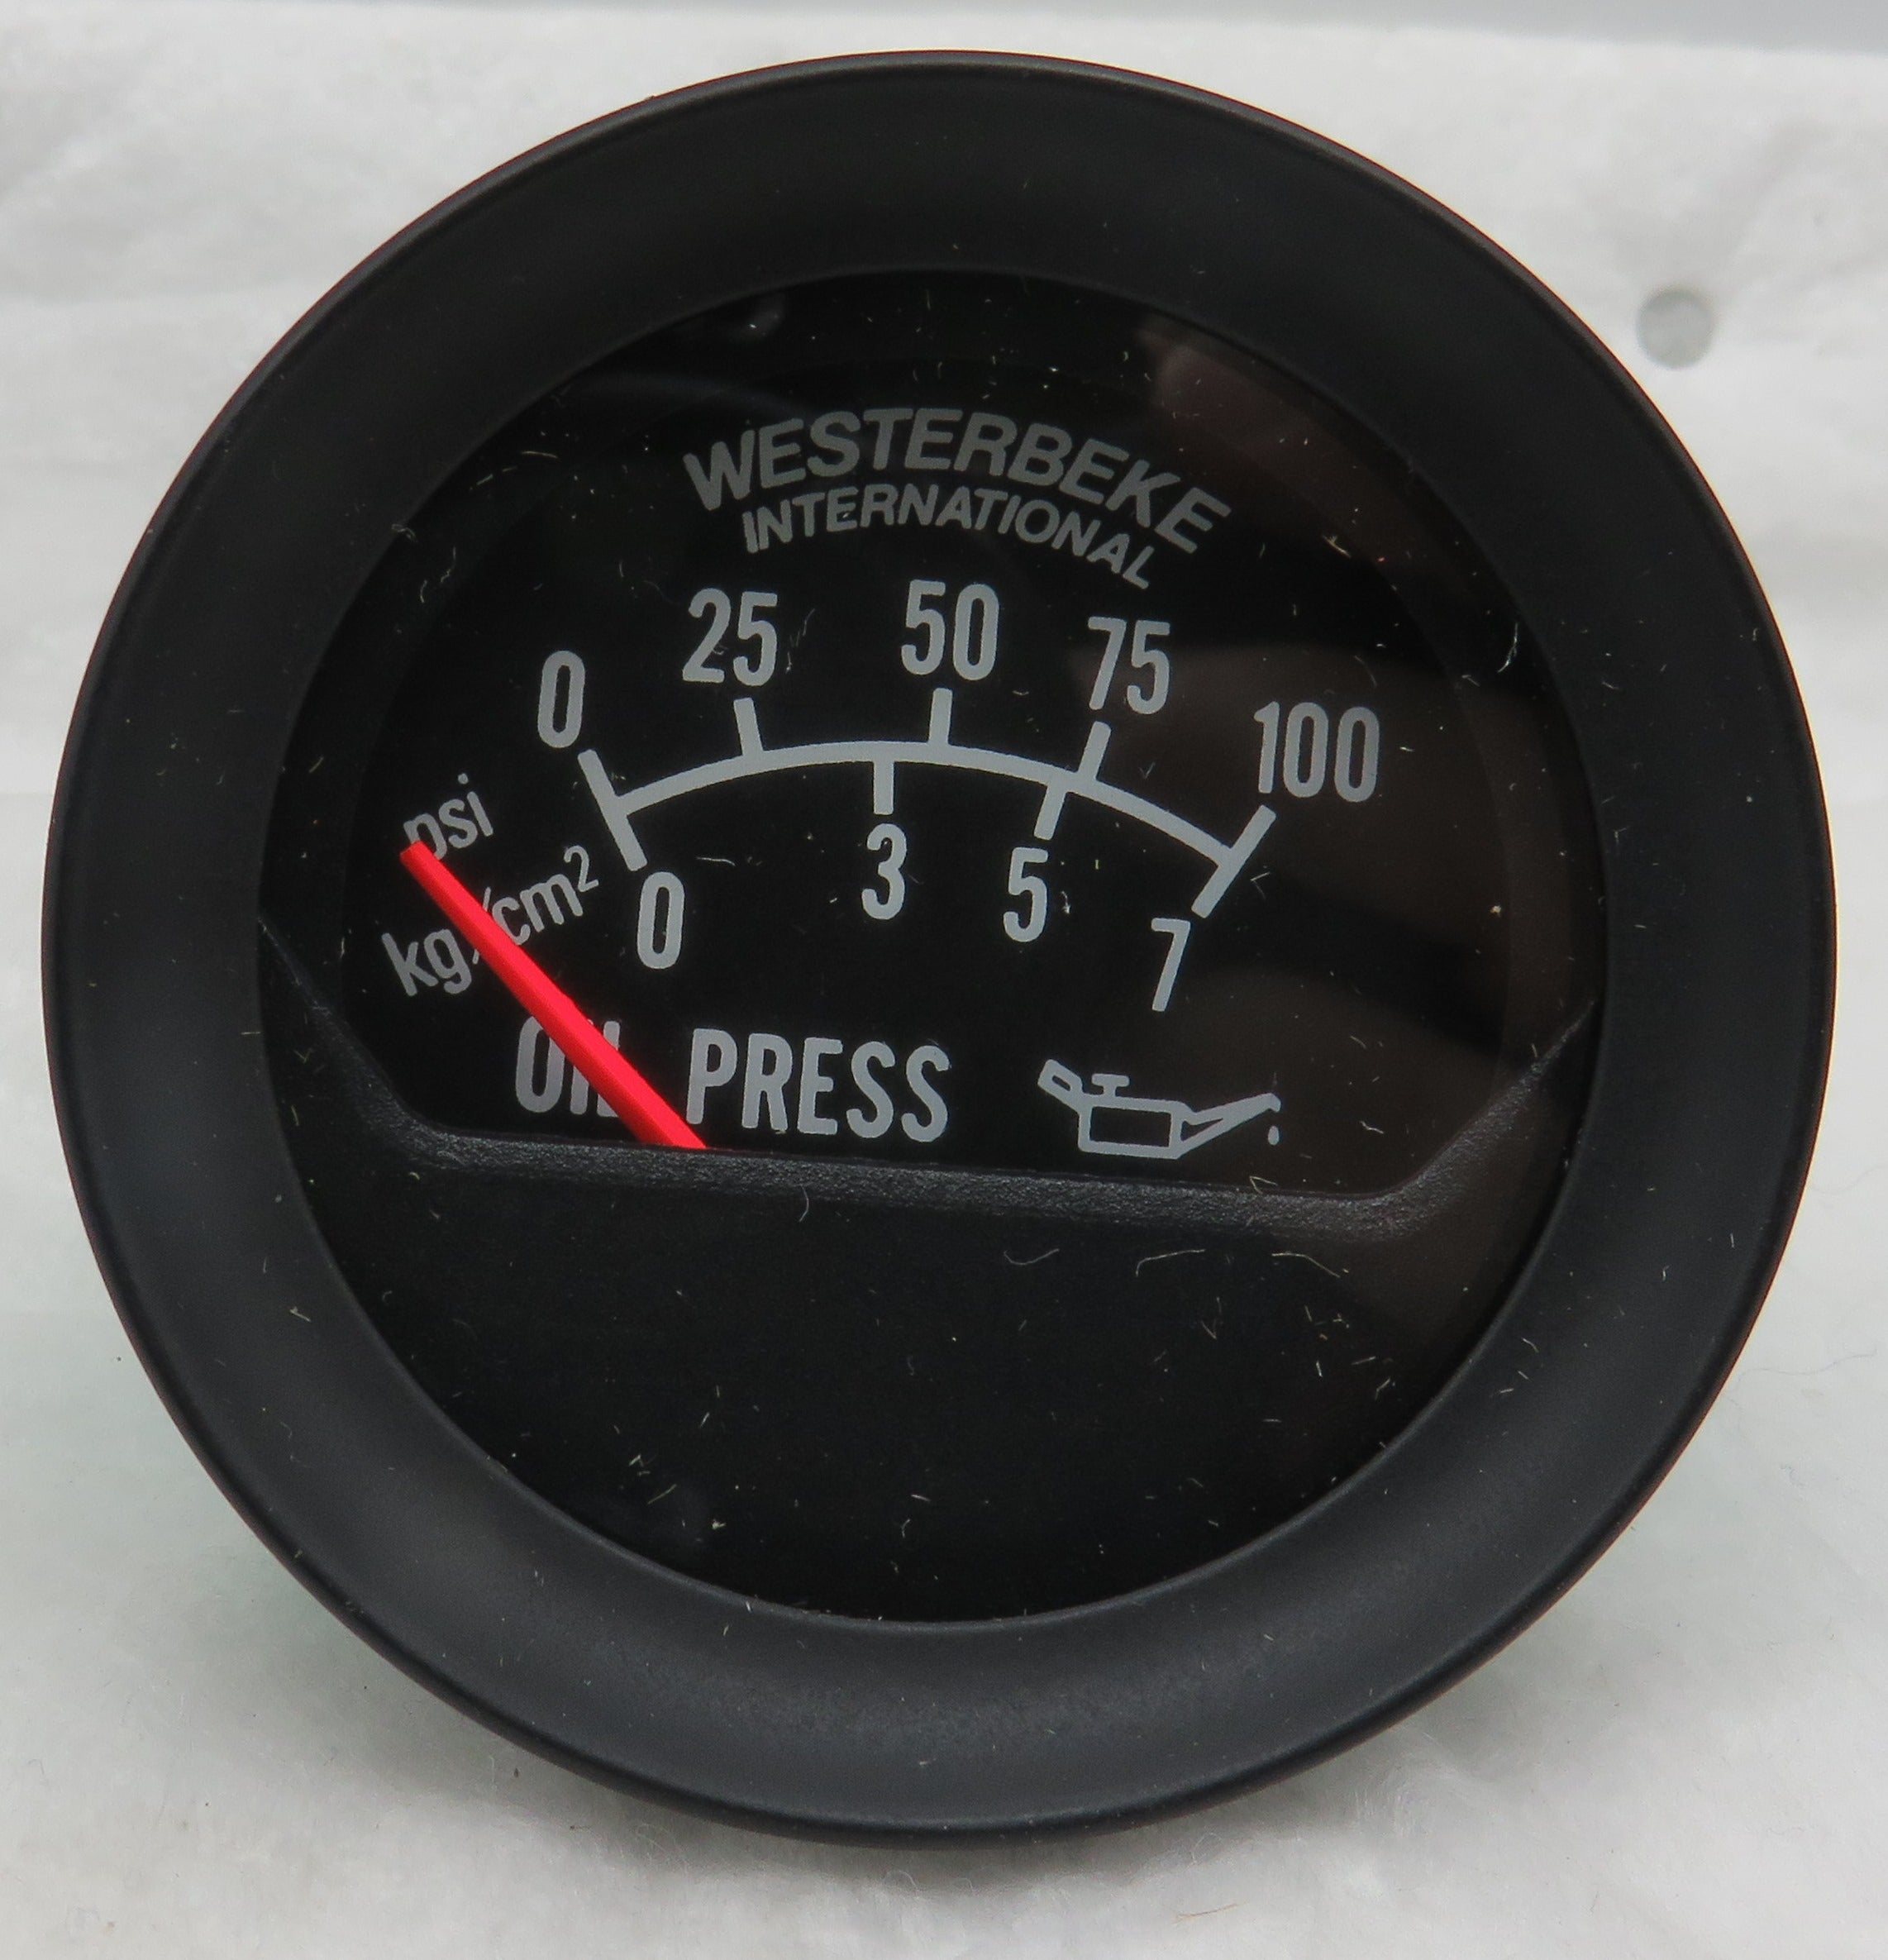 Westerbeke 37603 Westerbeke International Oil Pressure Gauge Meter 100 Psi GP9586A